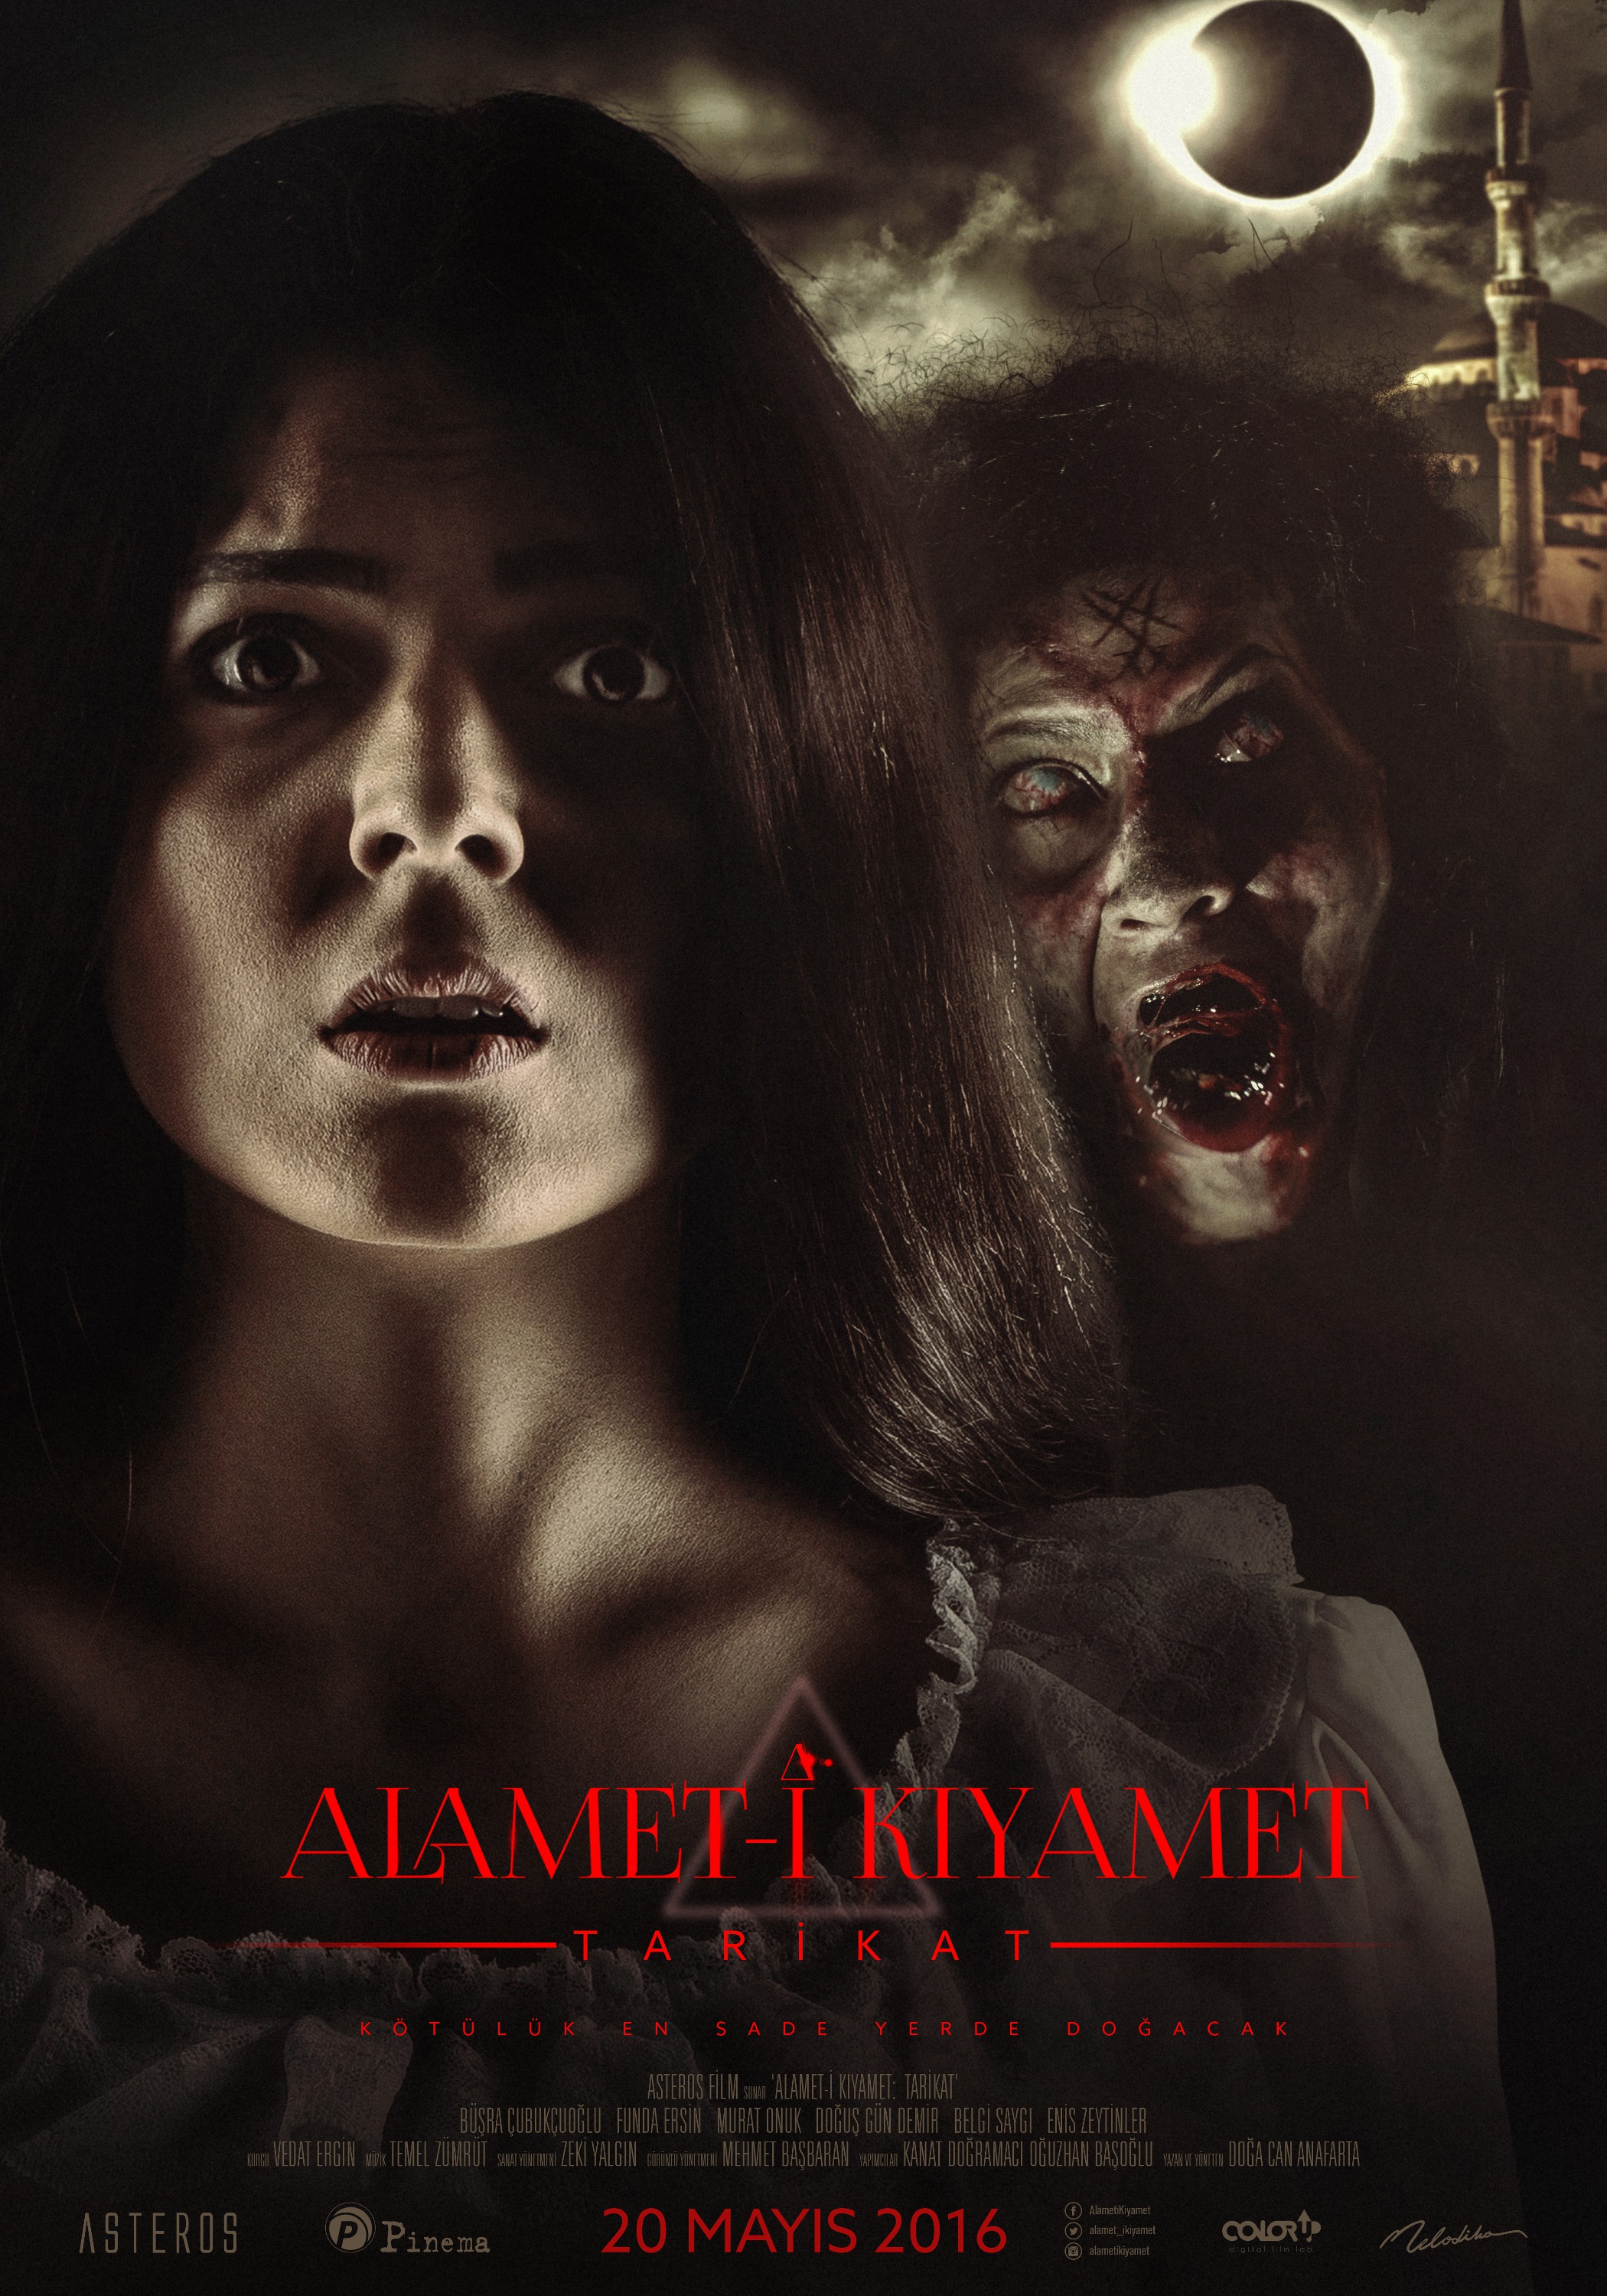 Mega Sized Movie Poster Image for Alamet-i Kiyamet (#2 of 2)